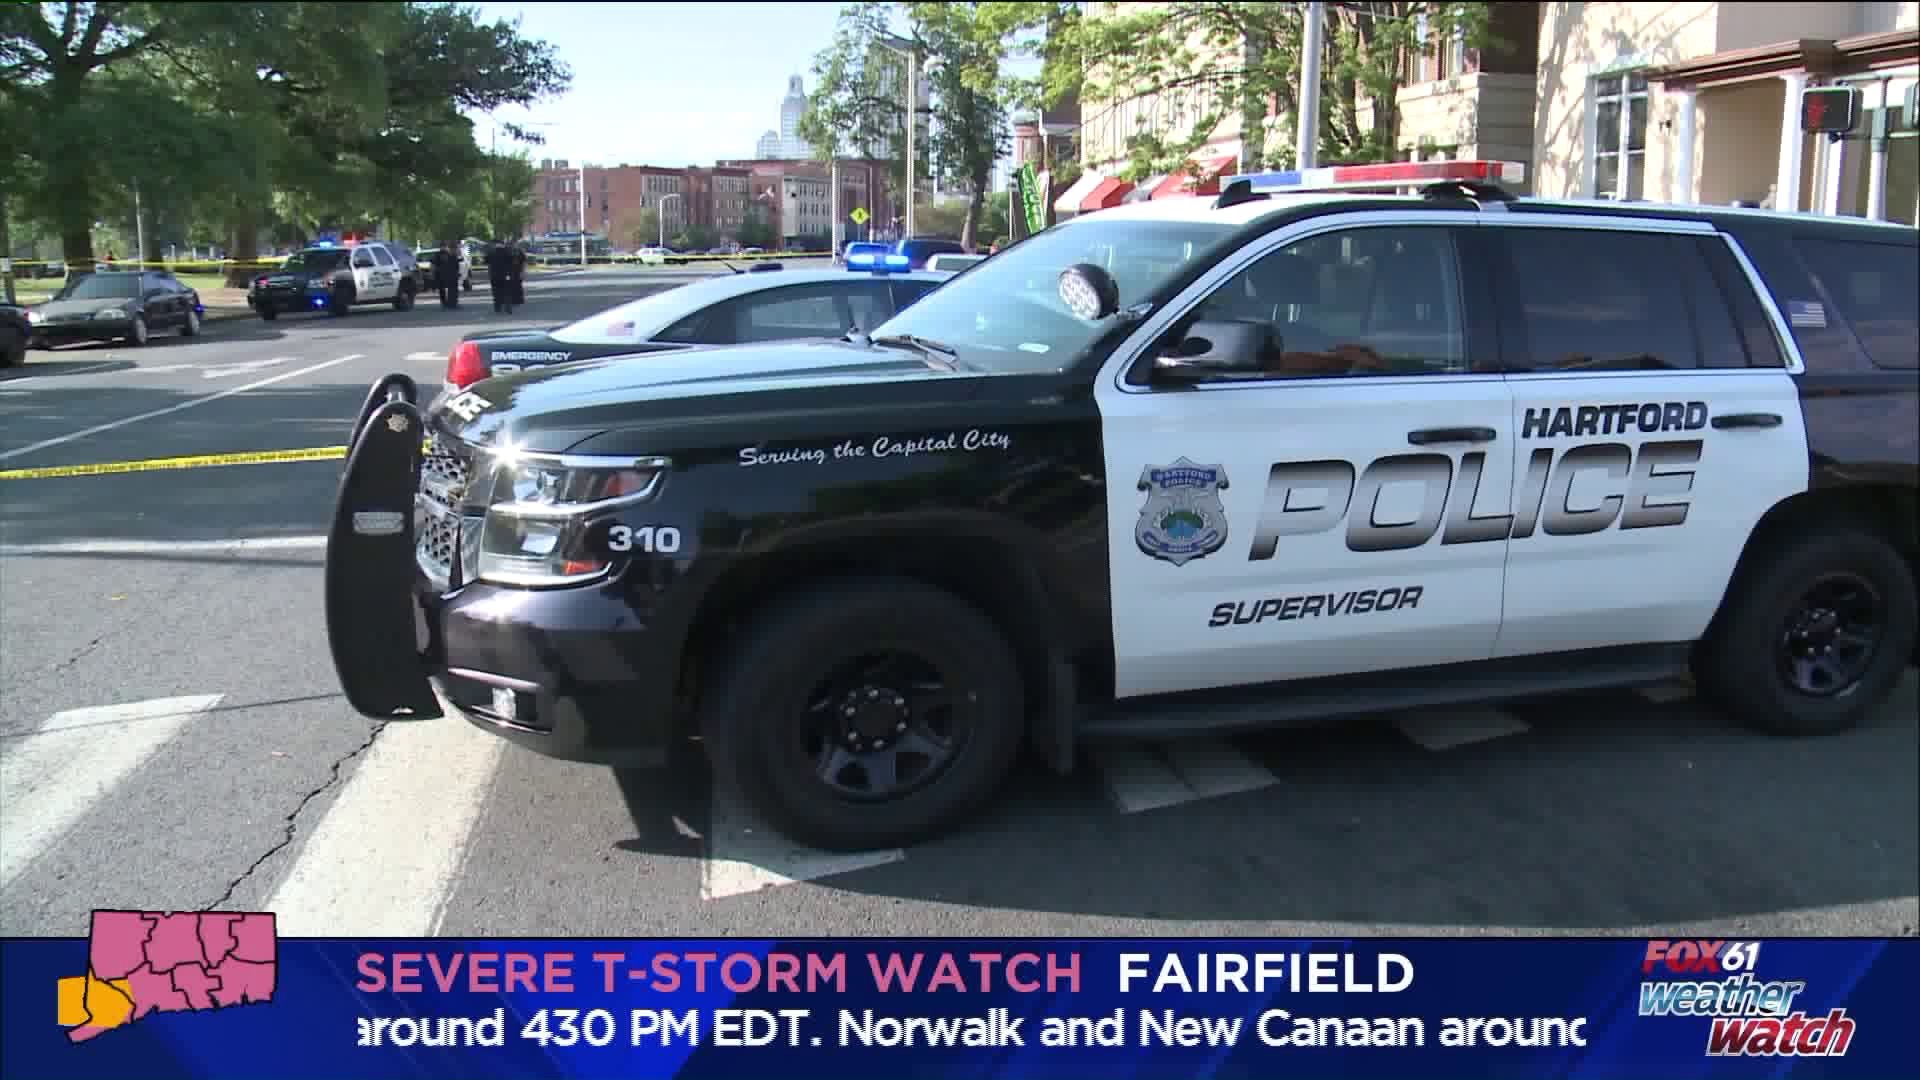 Hartford shootings